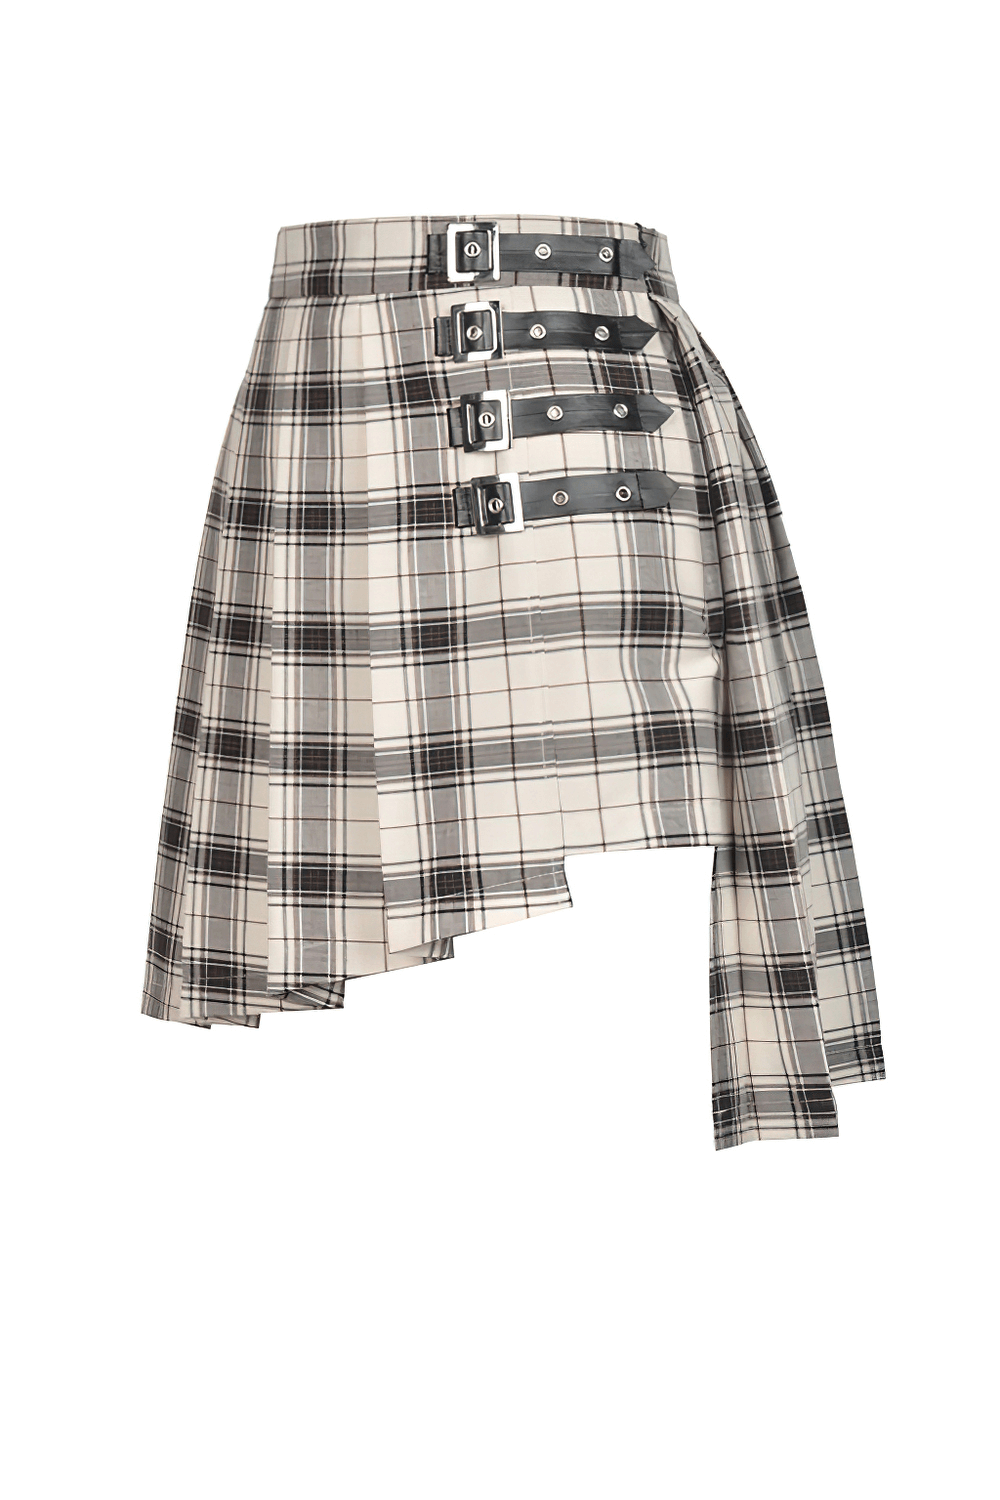 Edgy Plaid Asymmetrical Skirt with Bold Buckles